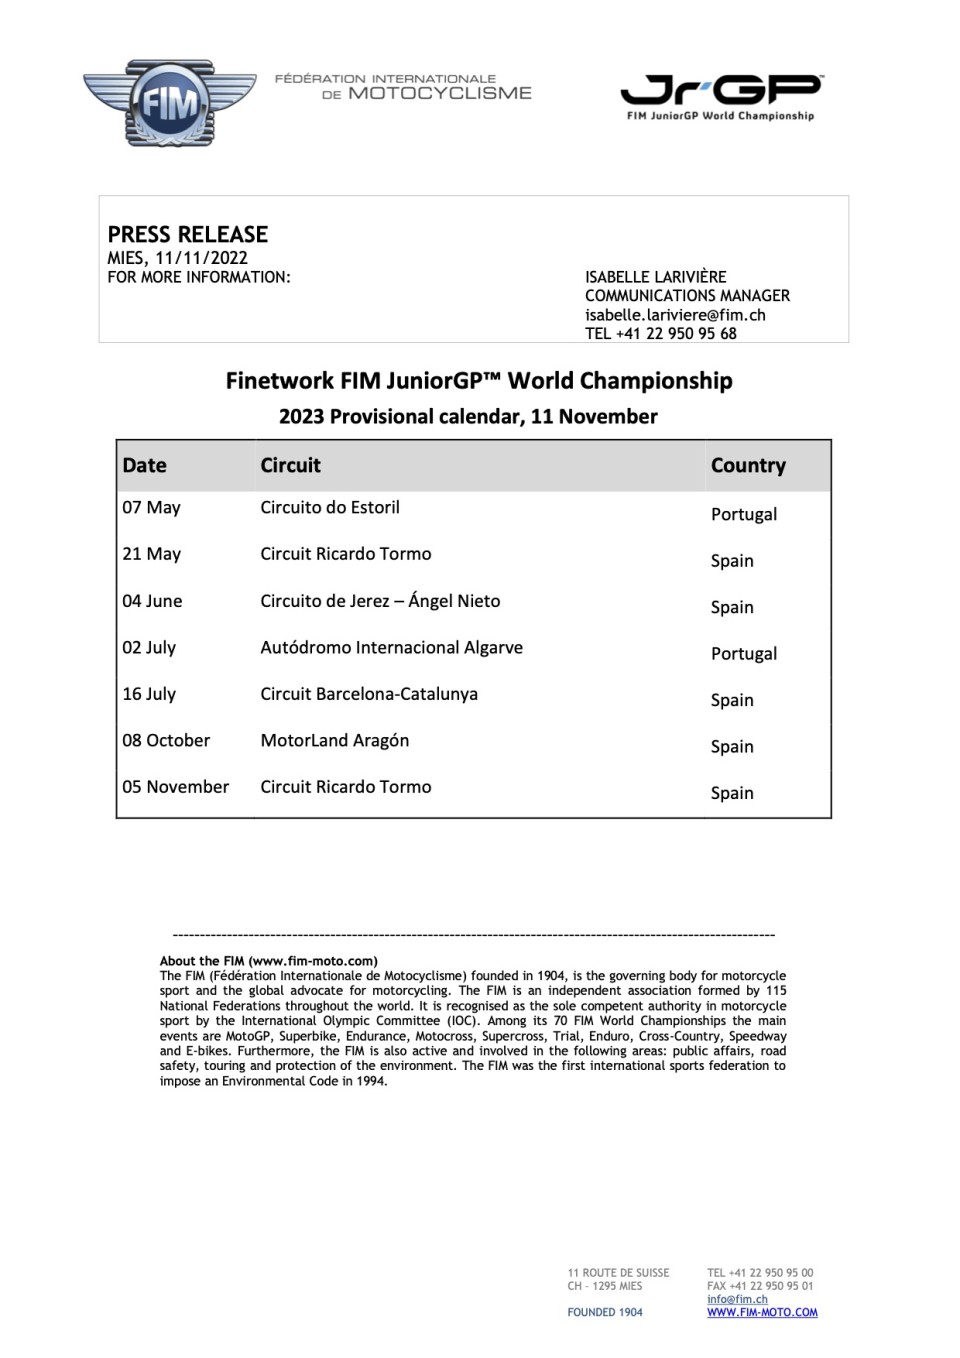 News: Il calendario provvisorio 2023 del Finetwork FIM JuniorGP World Championship 